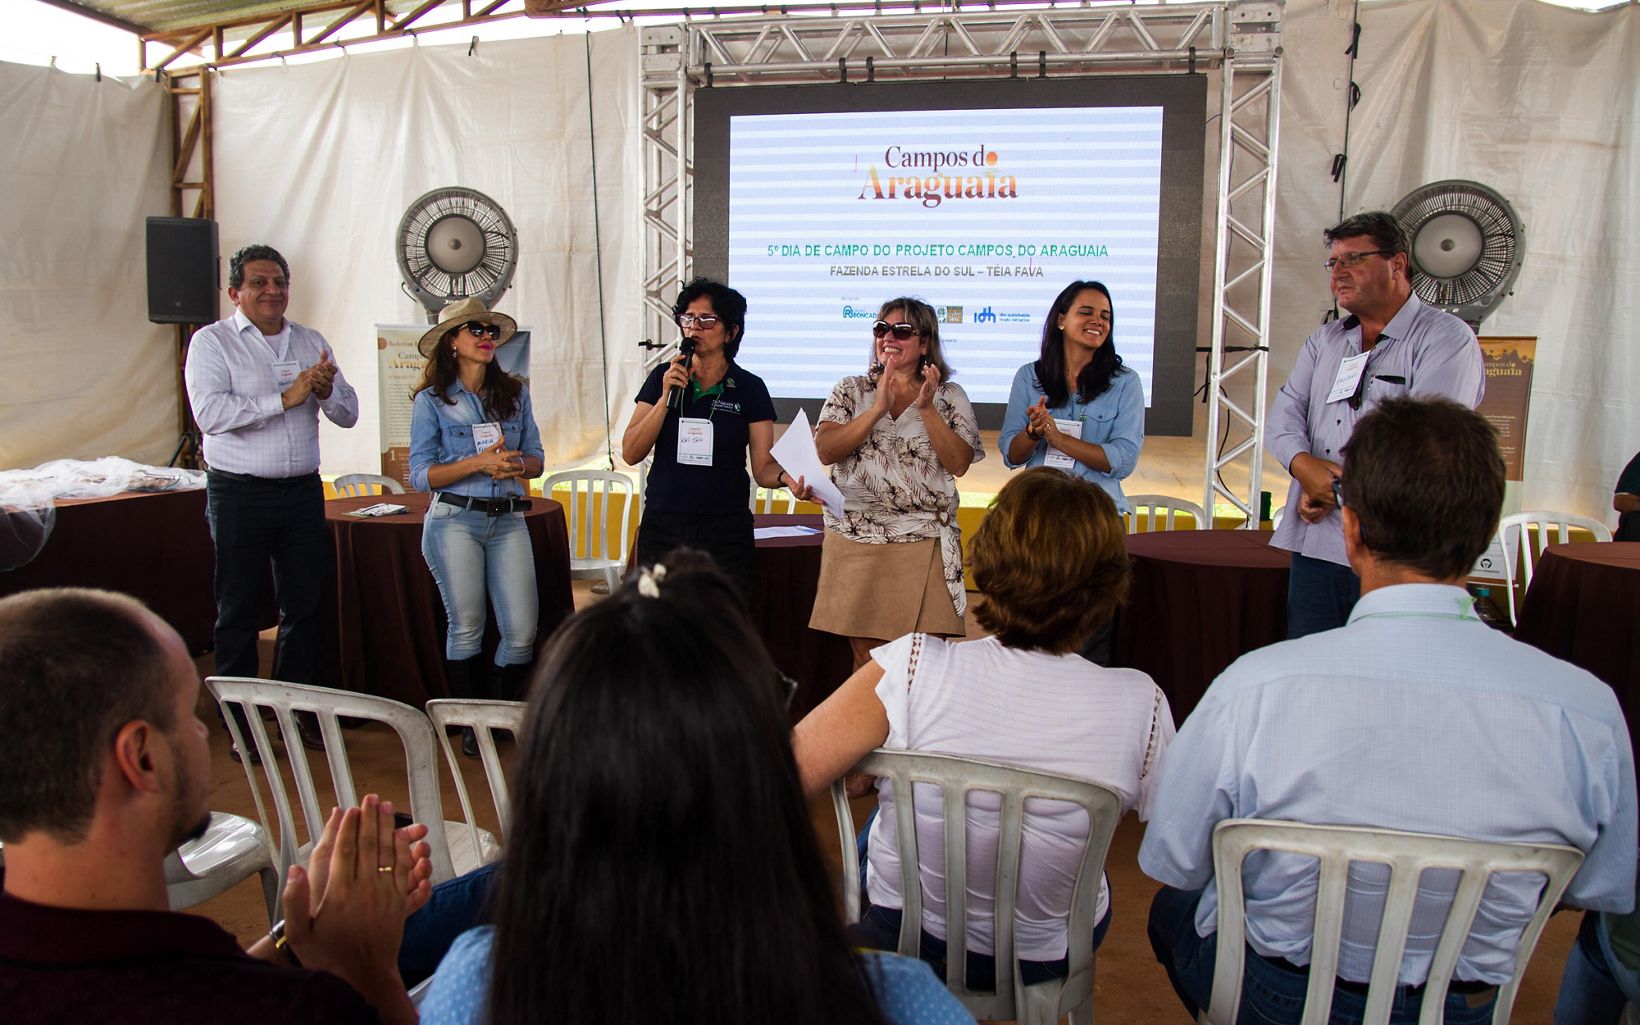 Francisco Fonseca, Raimunda de Mello e Julia Mangueira, da equipe de Agricultura da TNC Brasil, junto com parceiros do projeto Campos do Araguaia, em evento no Mato Grosso.